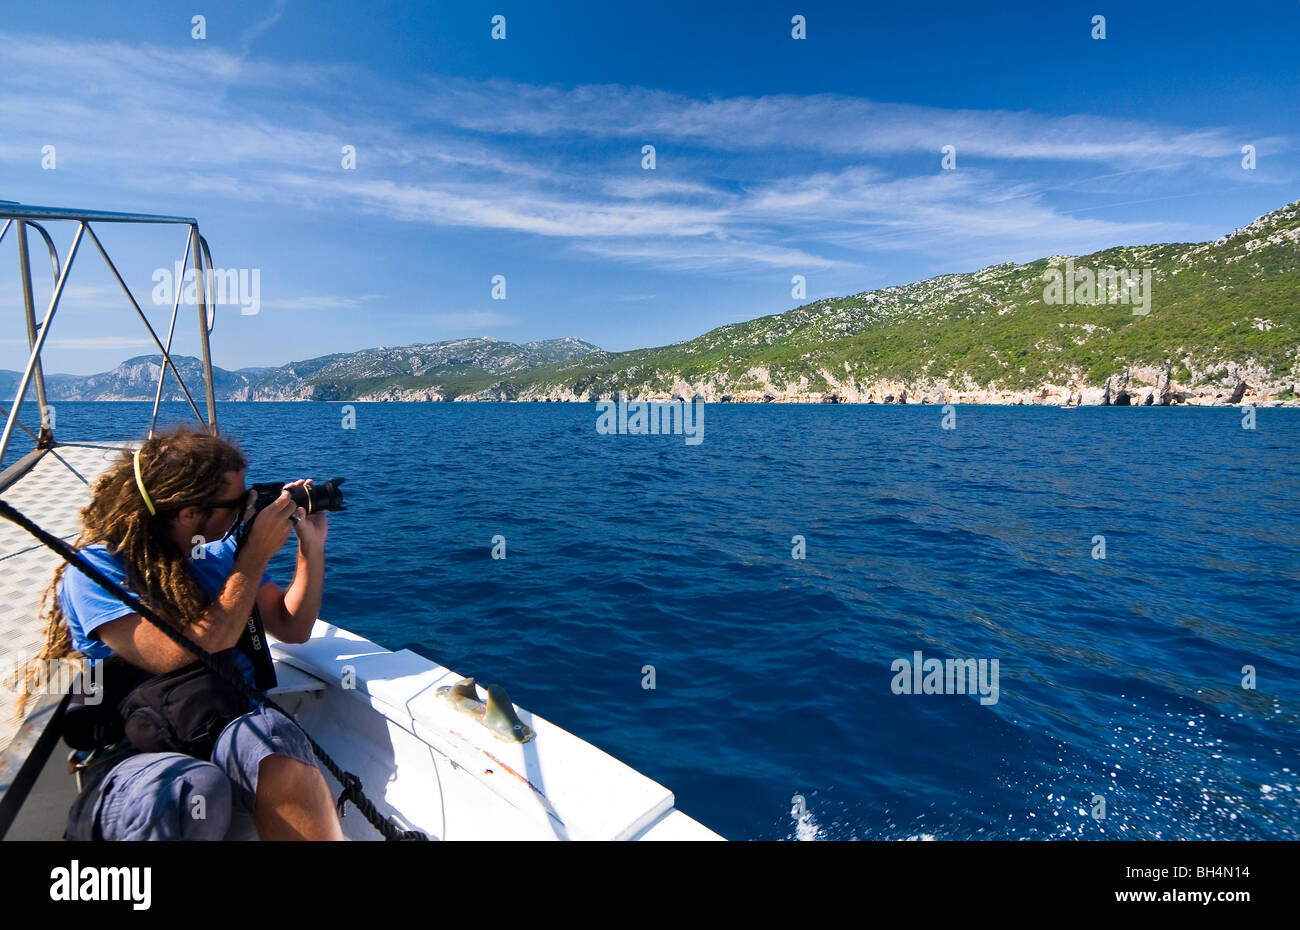 Photographe sur un bateau dans la plage de Cala Luna, Sardaigne, île de l'Italie. Eau bleu clair dans la baie de Cala Luna, Mer Méditerranée. Banque D'Images